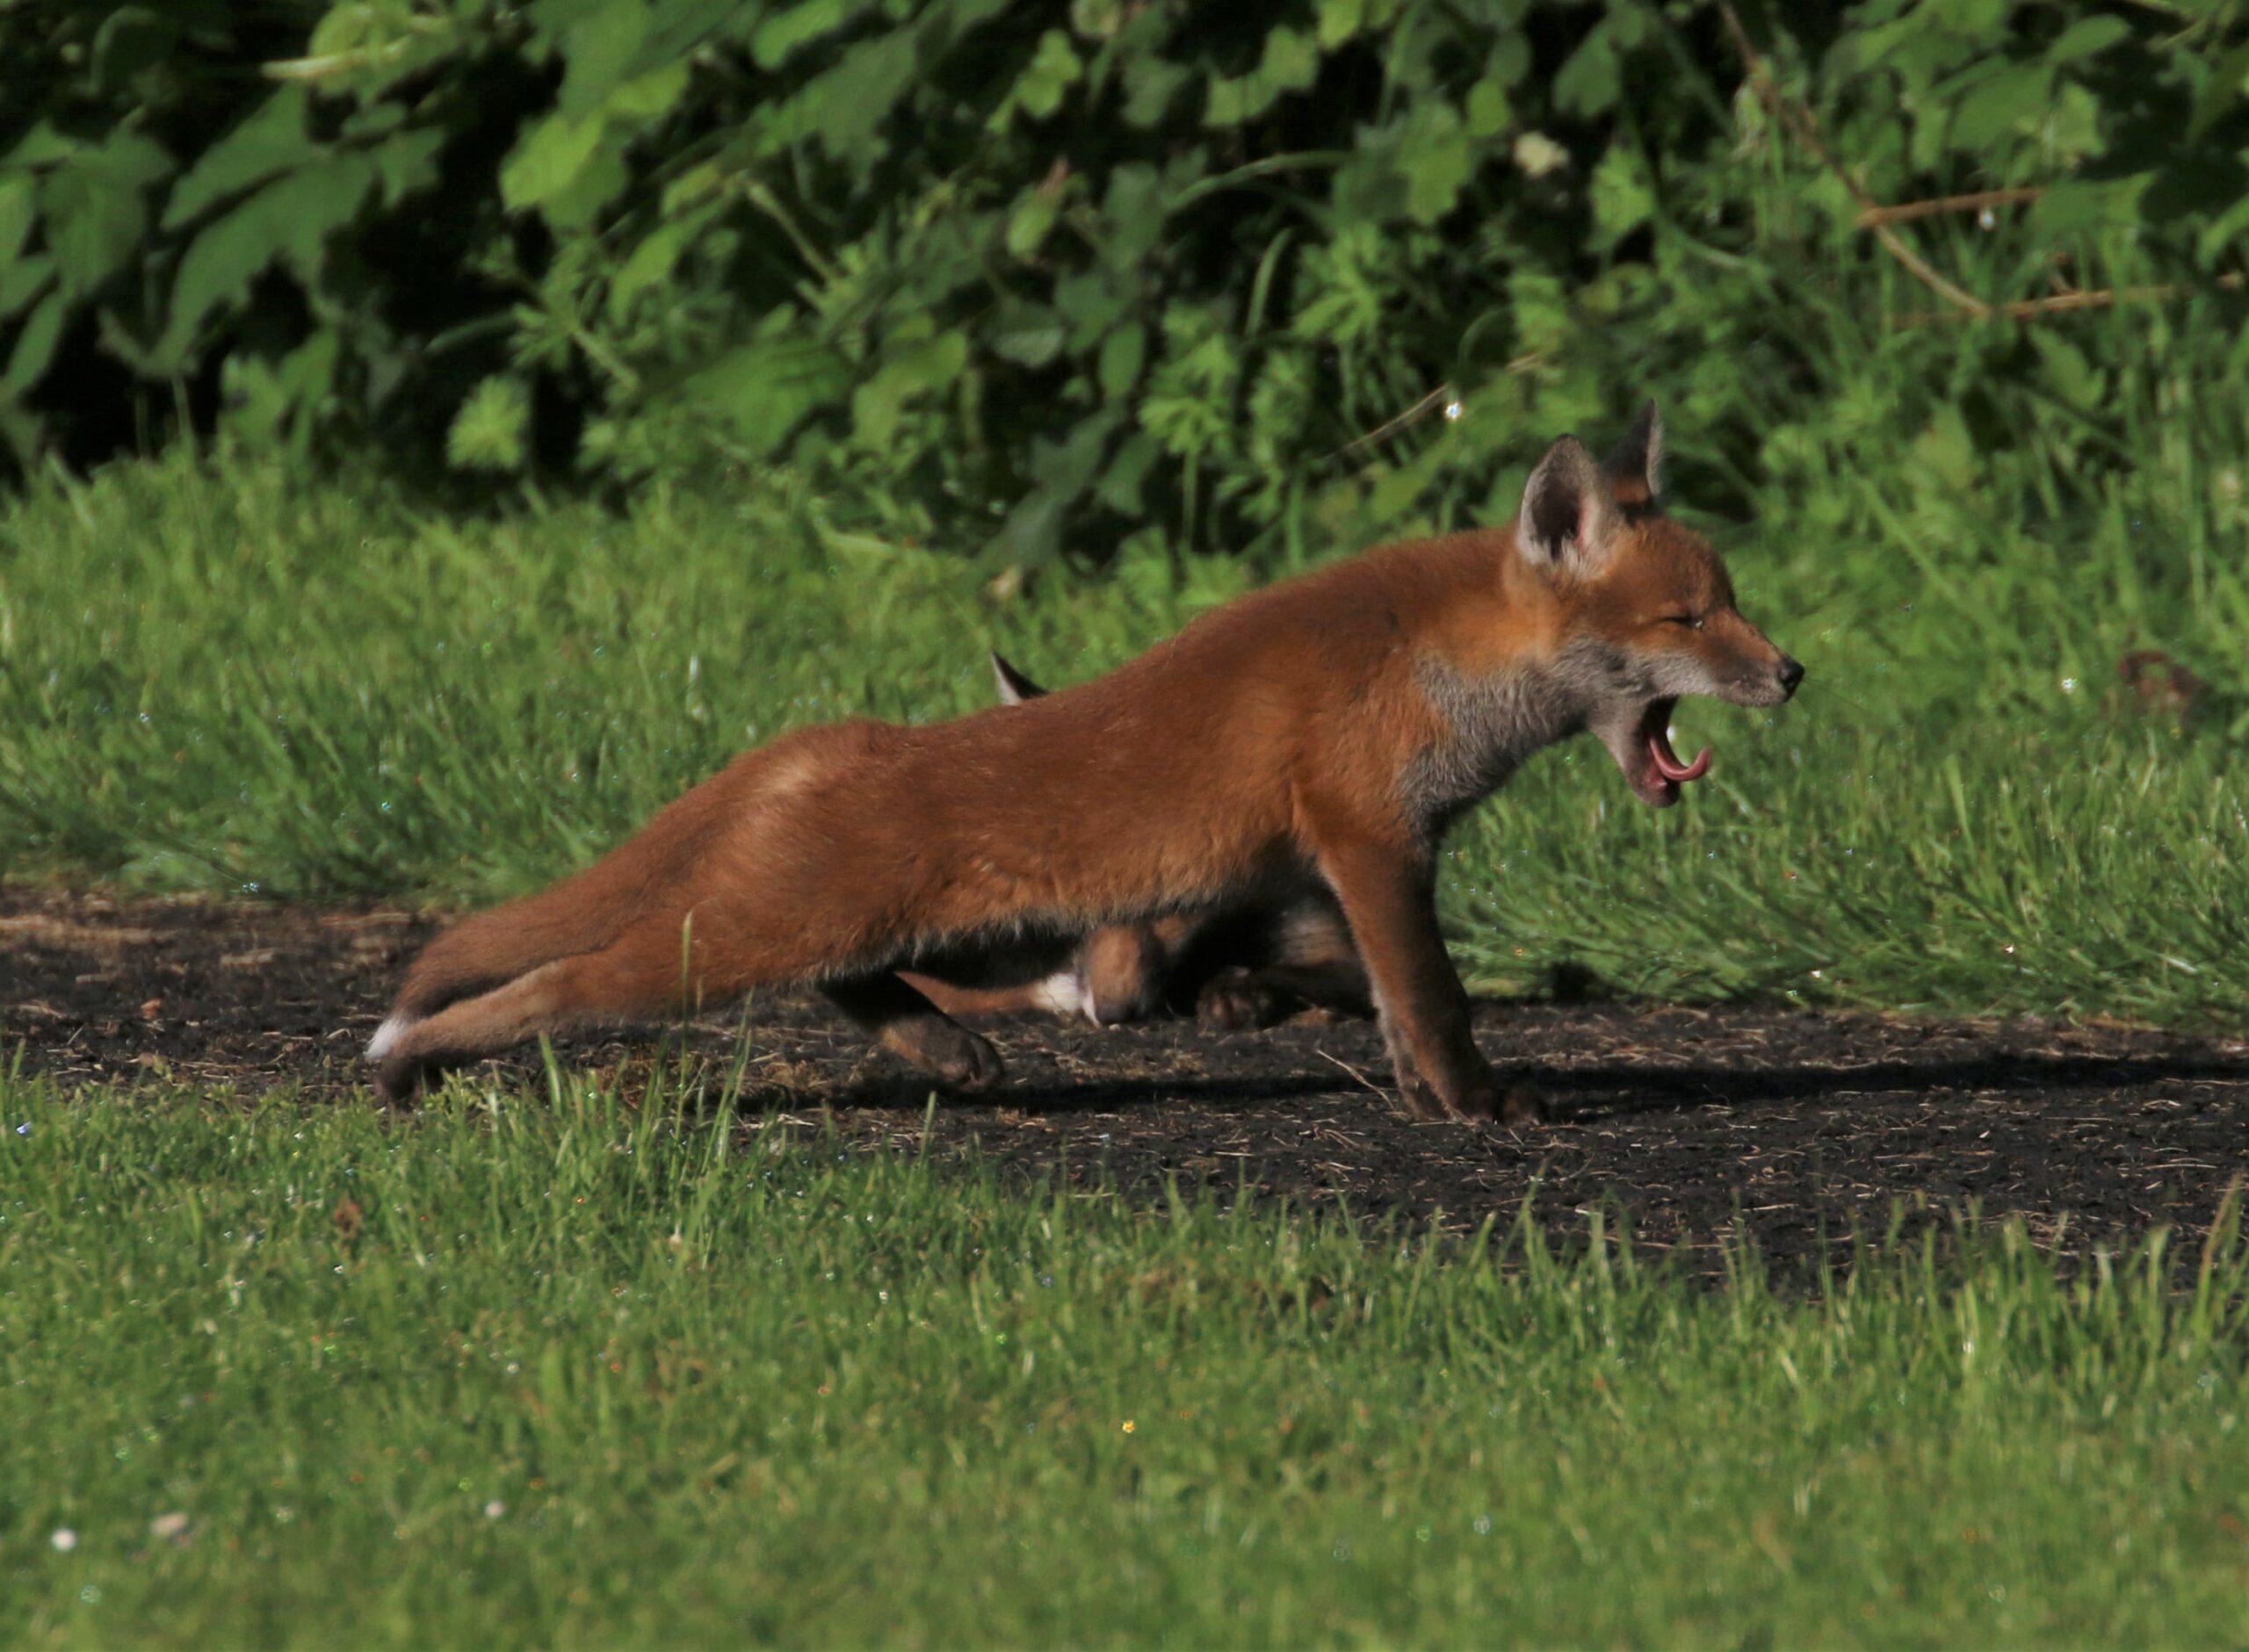 A fox cub stretching